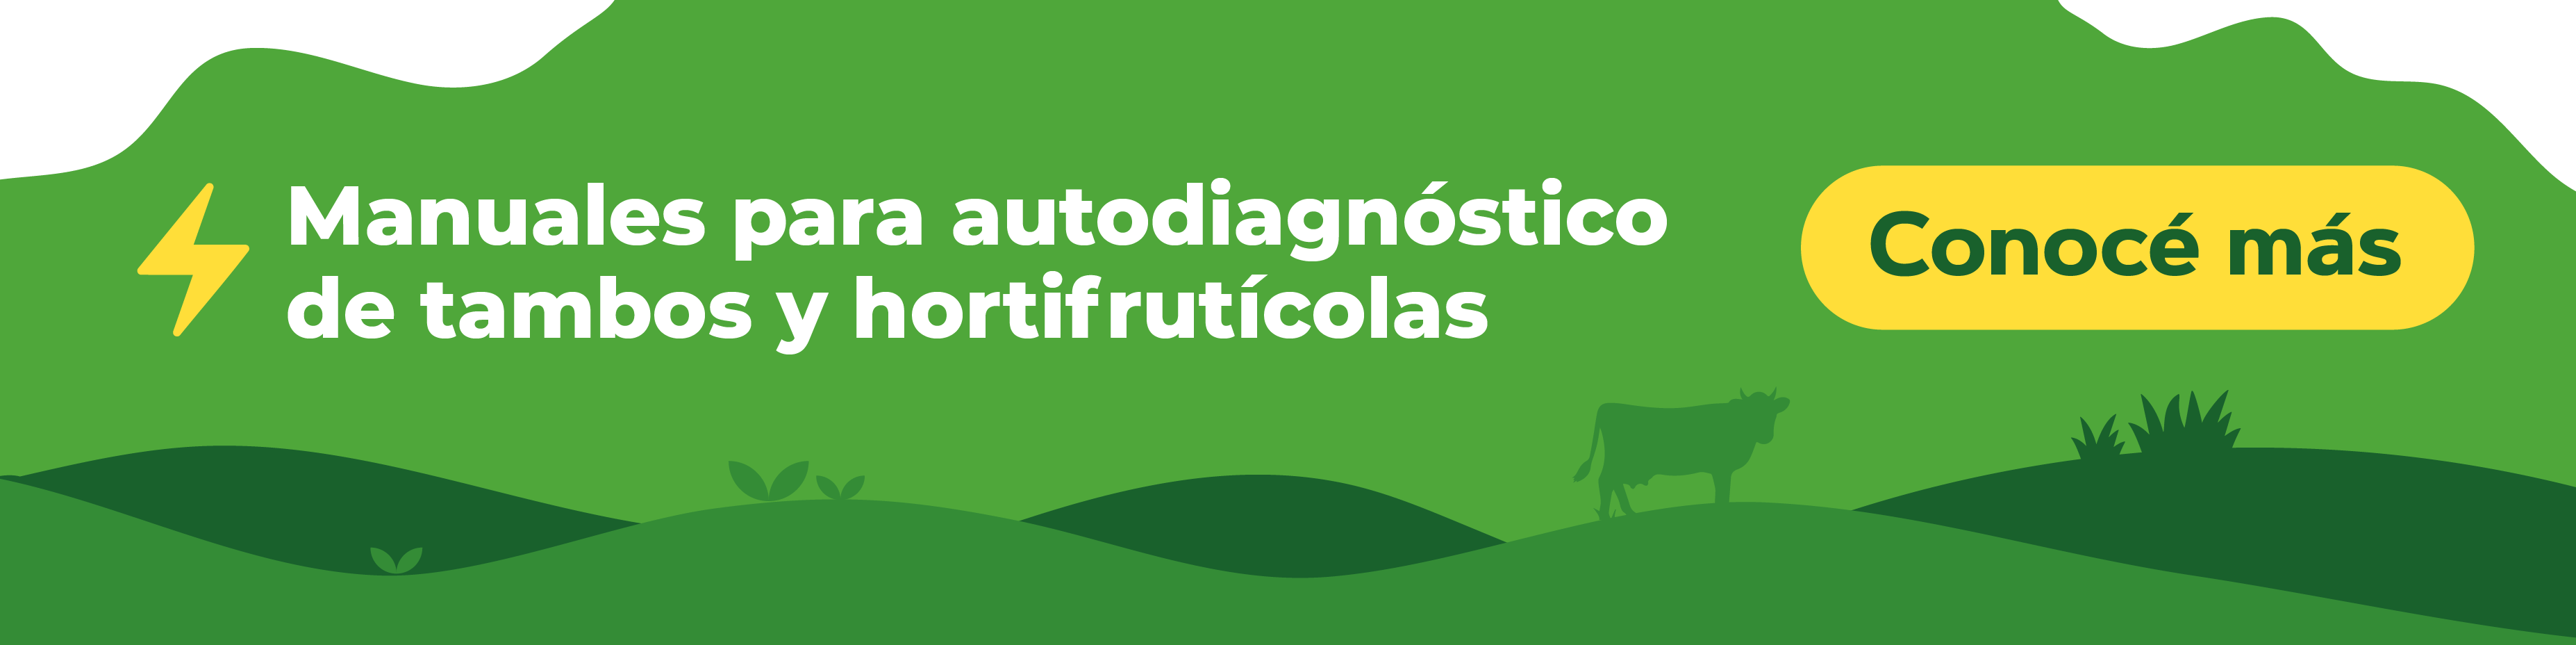 Manuales para autodiagnóstico de tambos y hortifrutícolas